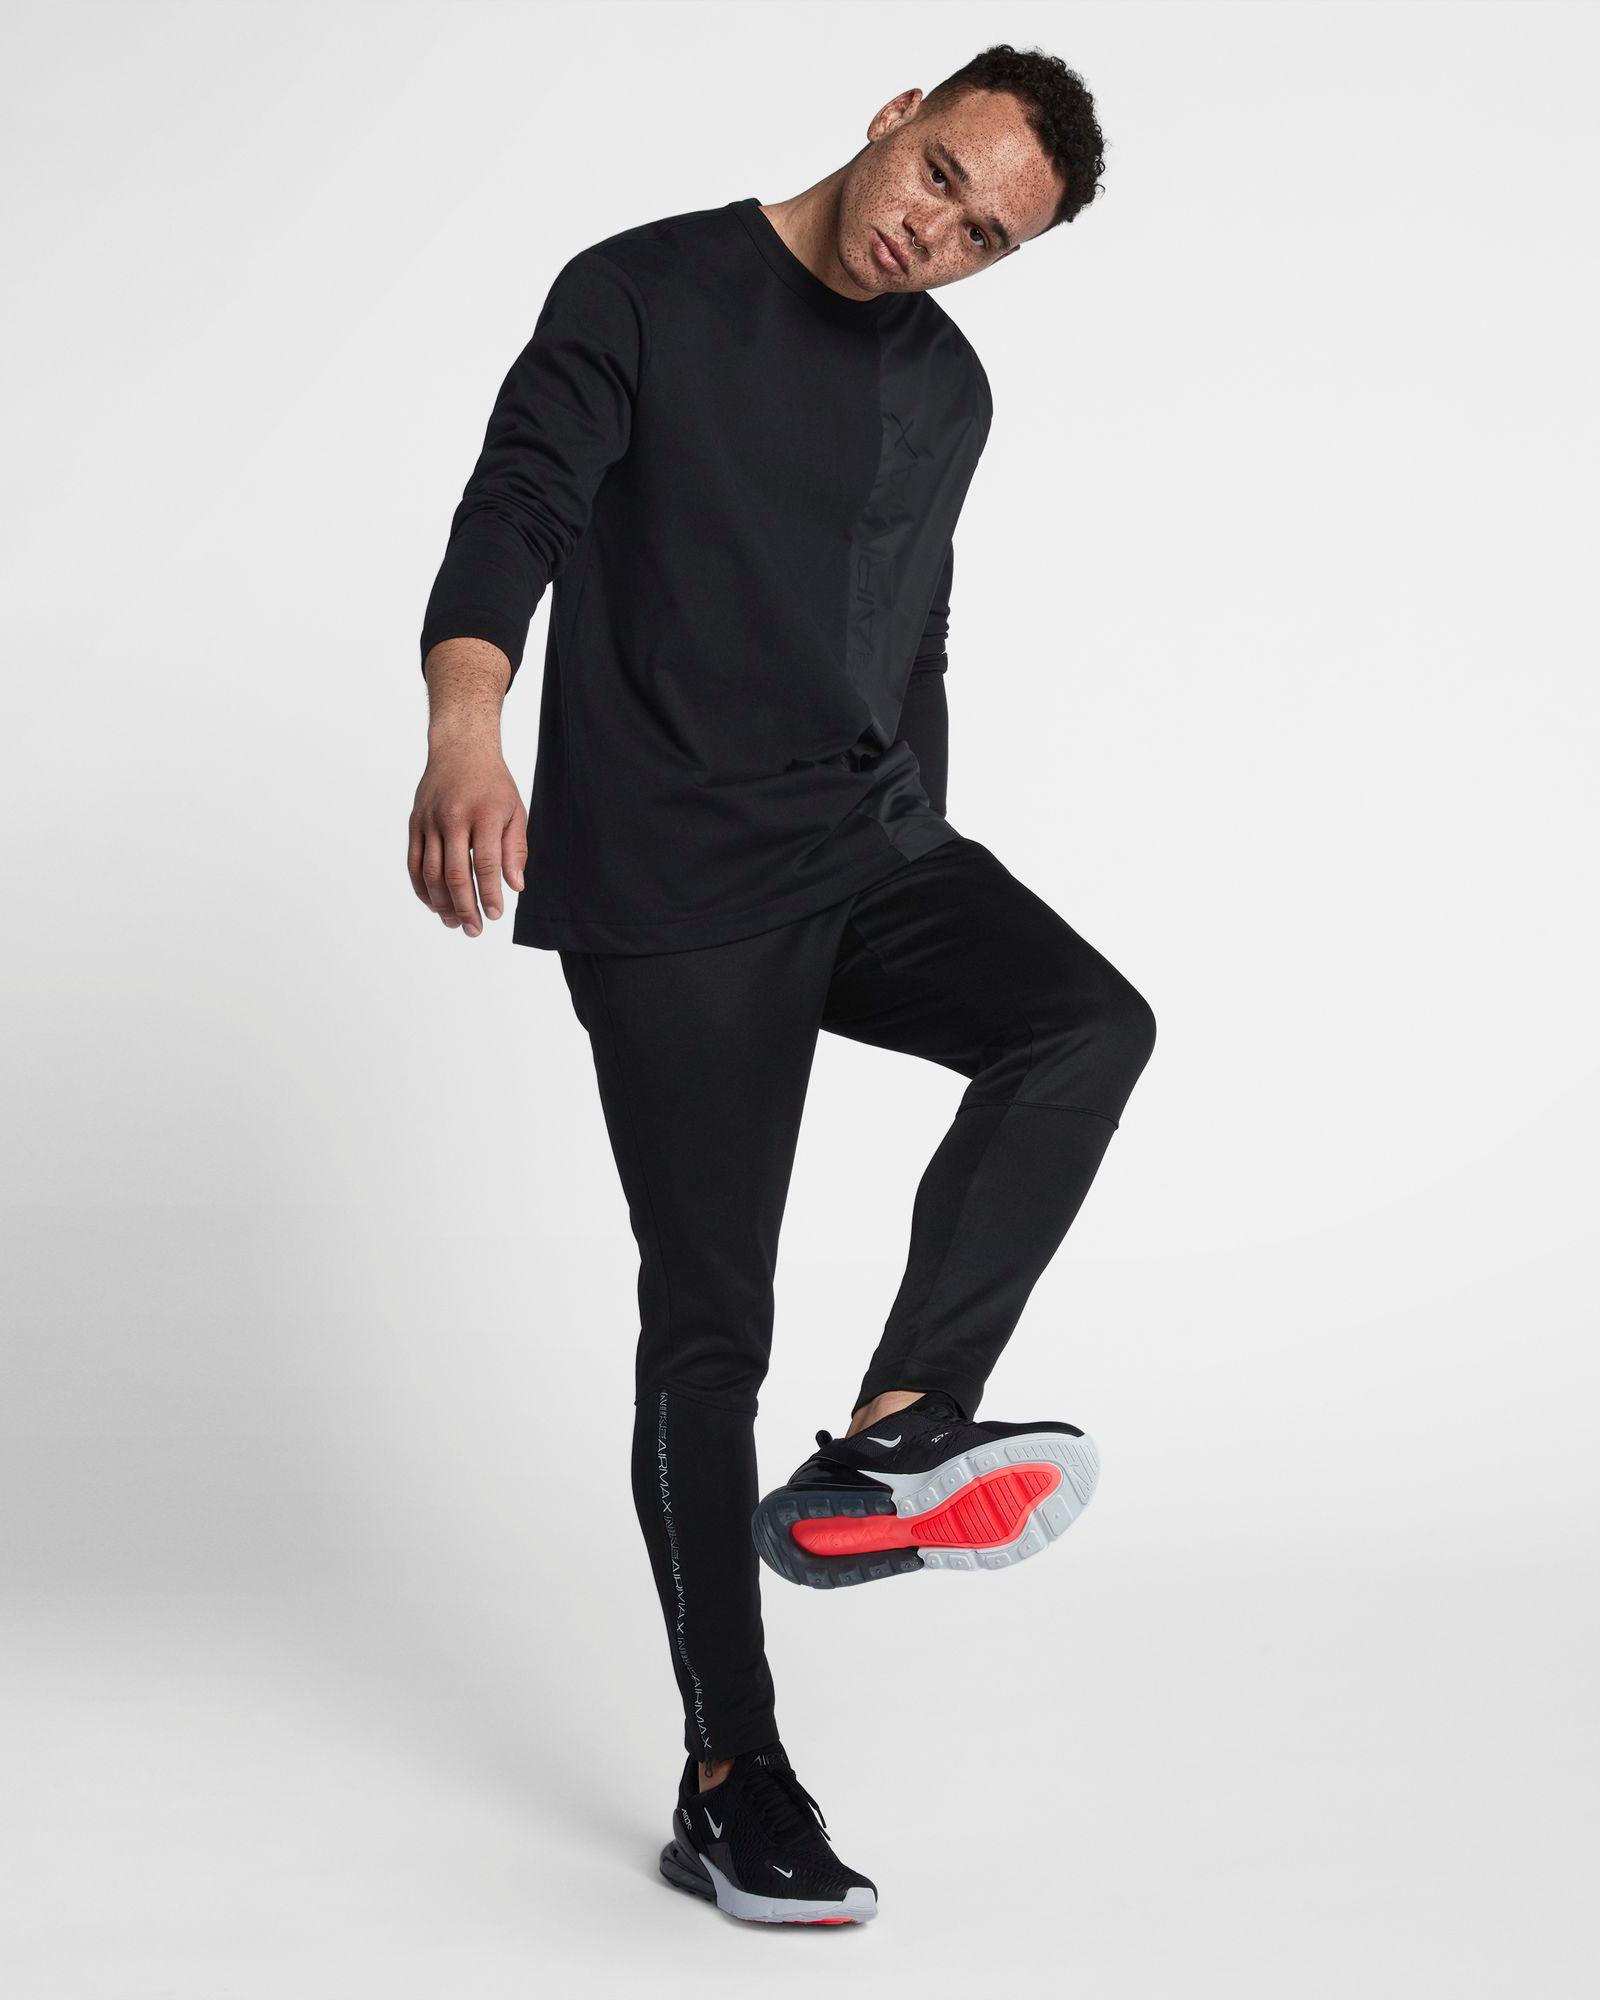 Vago Asociar Demonio Nike Air Max 270 Sneaker Herren black anthracite-white im Online Shop von  SportScheck kaufen